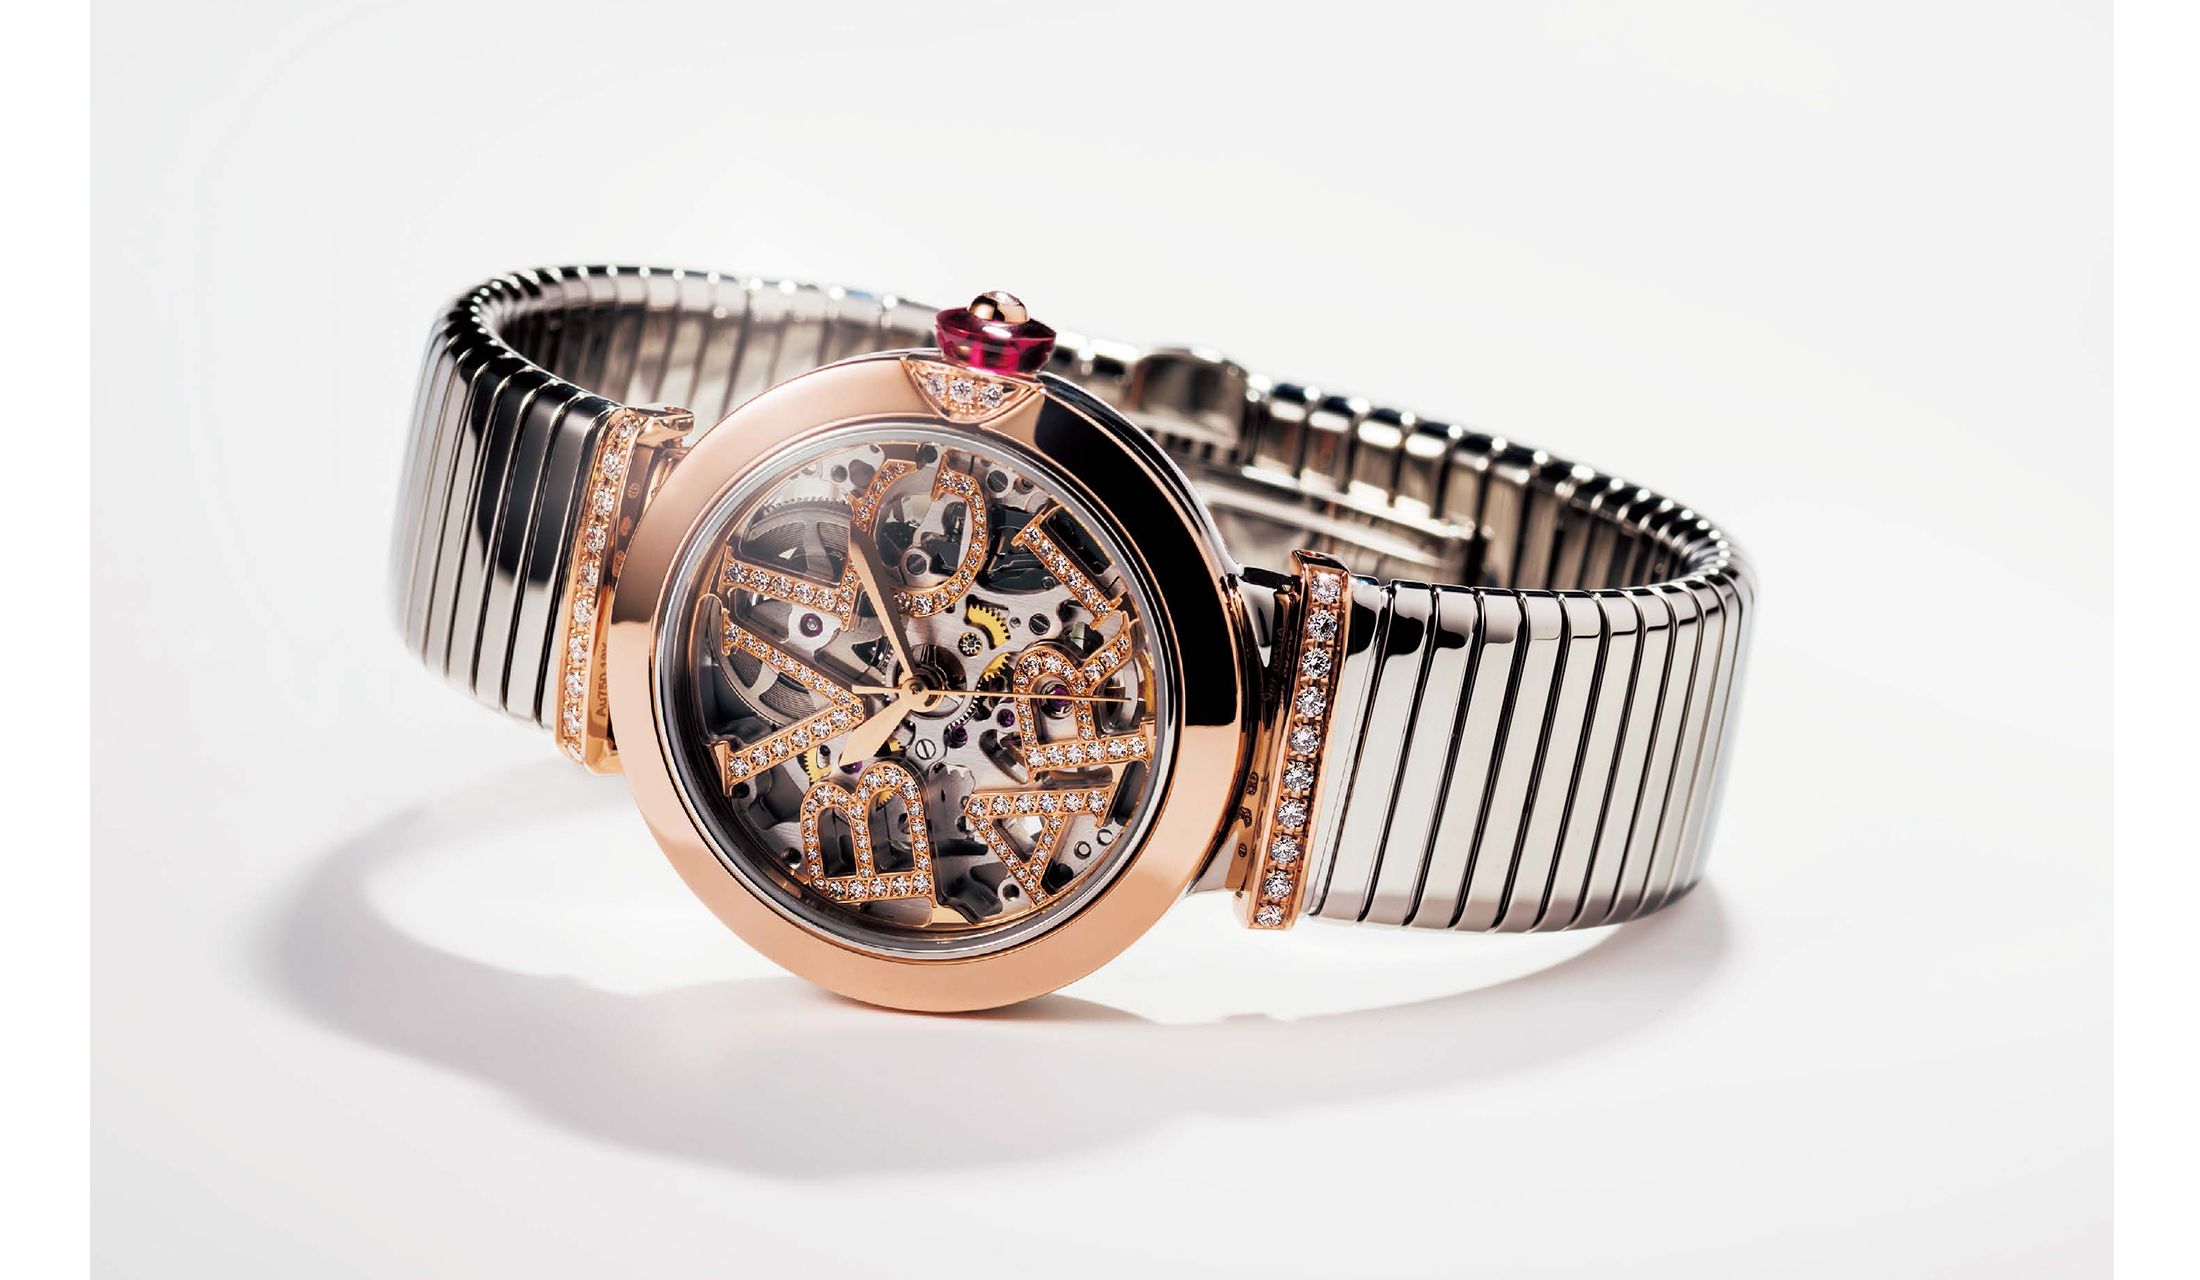 ダイヤモンドとスケルトン構造の輝きが美しい ブルガリの時計 ルチェア スケルトン の魅力に 工房取材で迫ります Precious Jp プレシャス